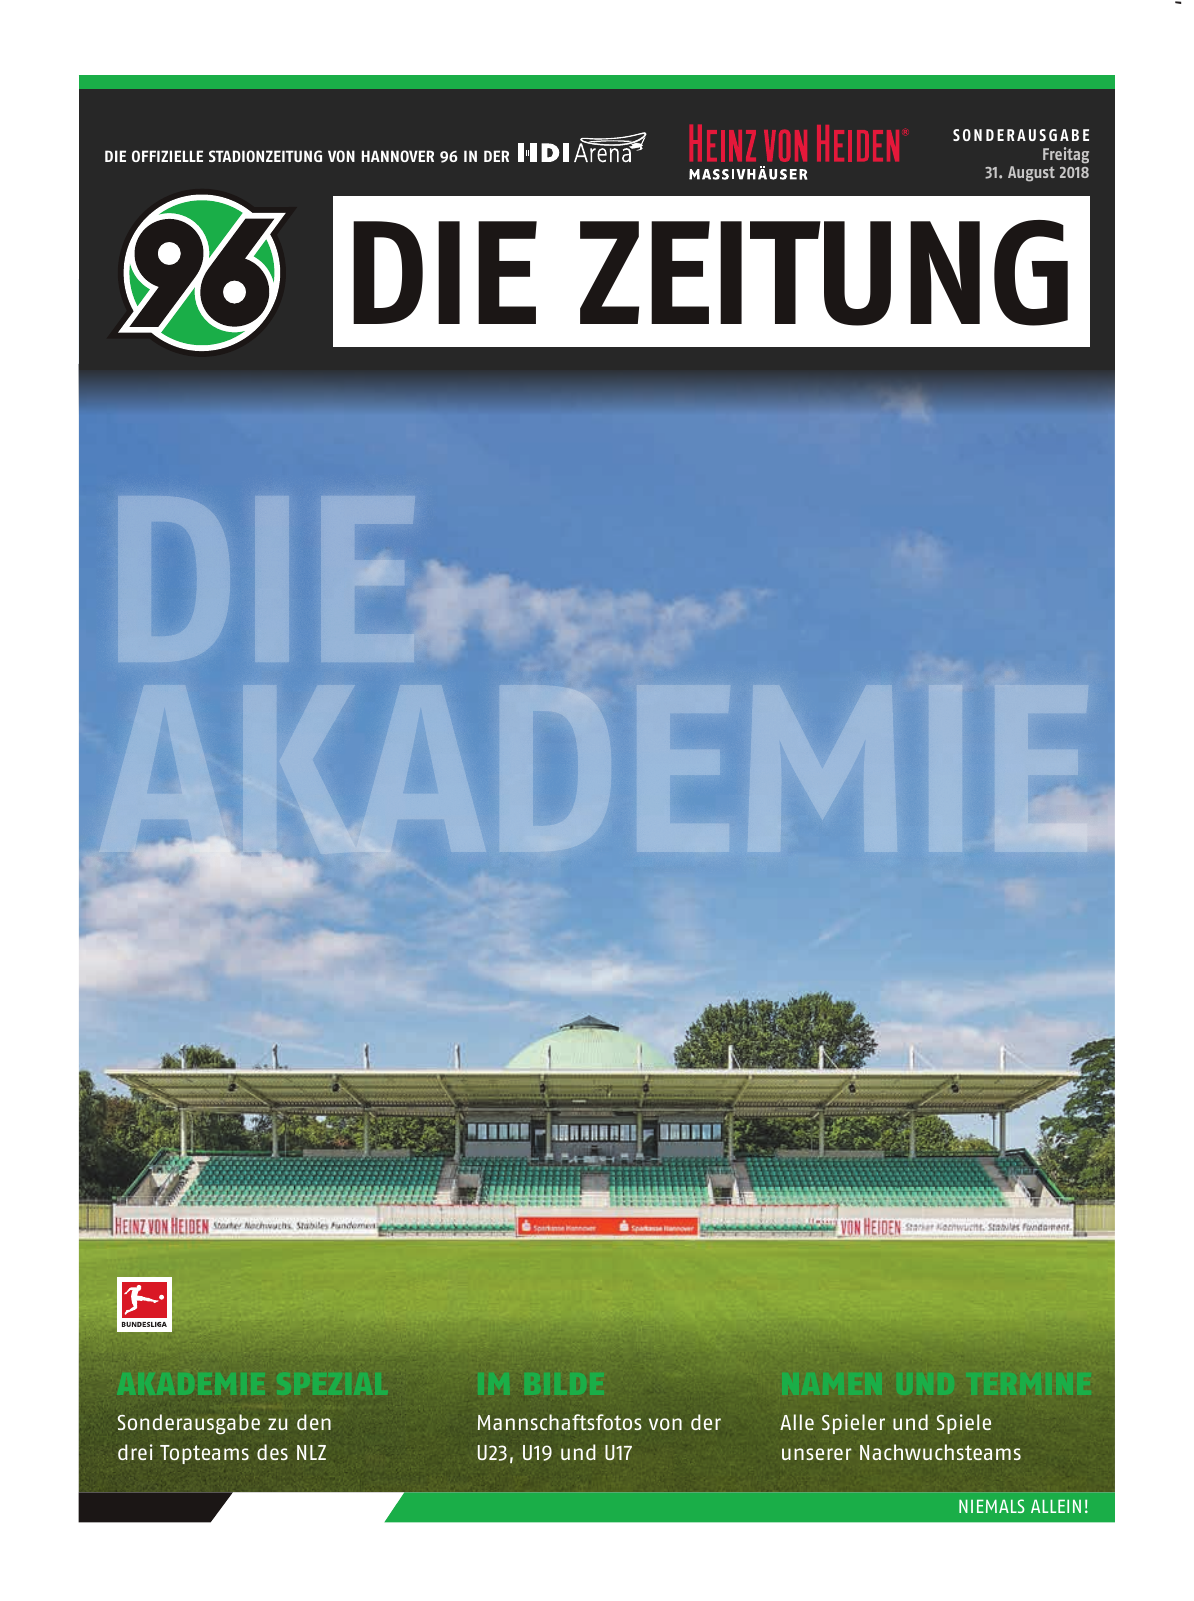 Vorschau 96-Die-Zeitung-Die-Akademie Seite 1